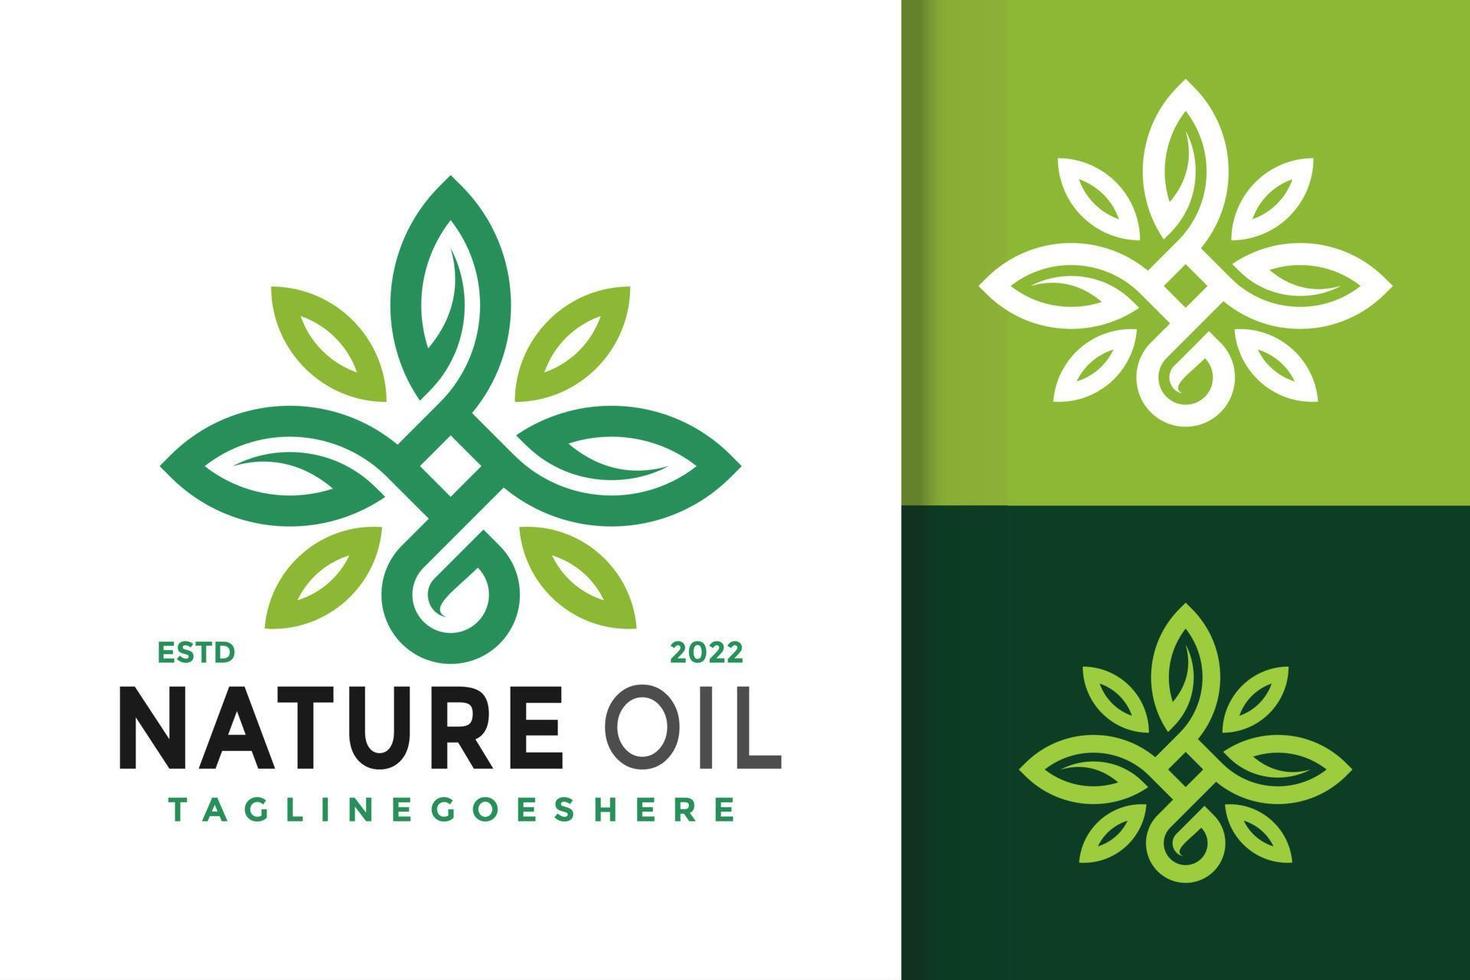 Naturtropfen-Öl-Logo-Design, Markenidentitäts-Logos-Vektor, modernes Logo, Logo-Designs-Vektor-Illustrationsvorlage vektor